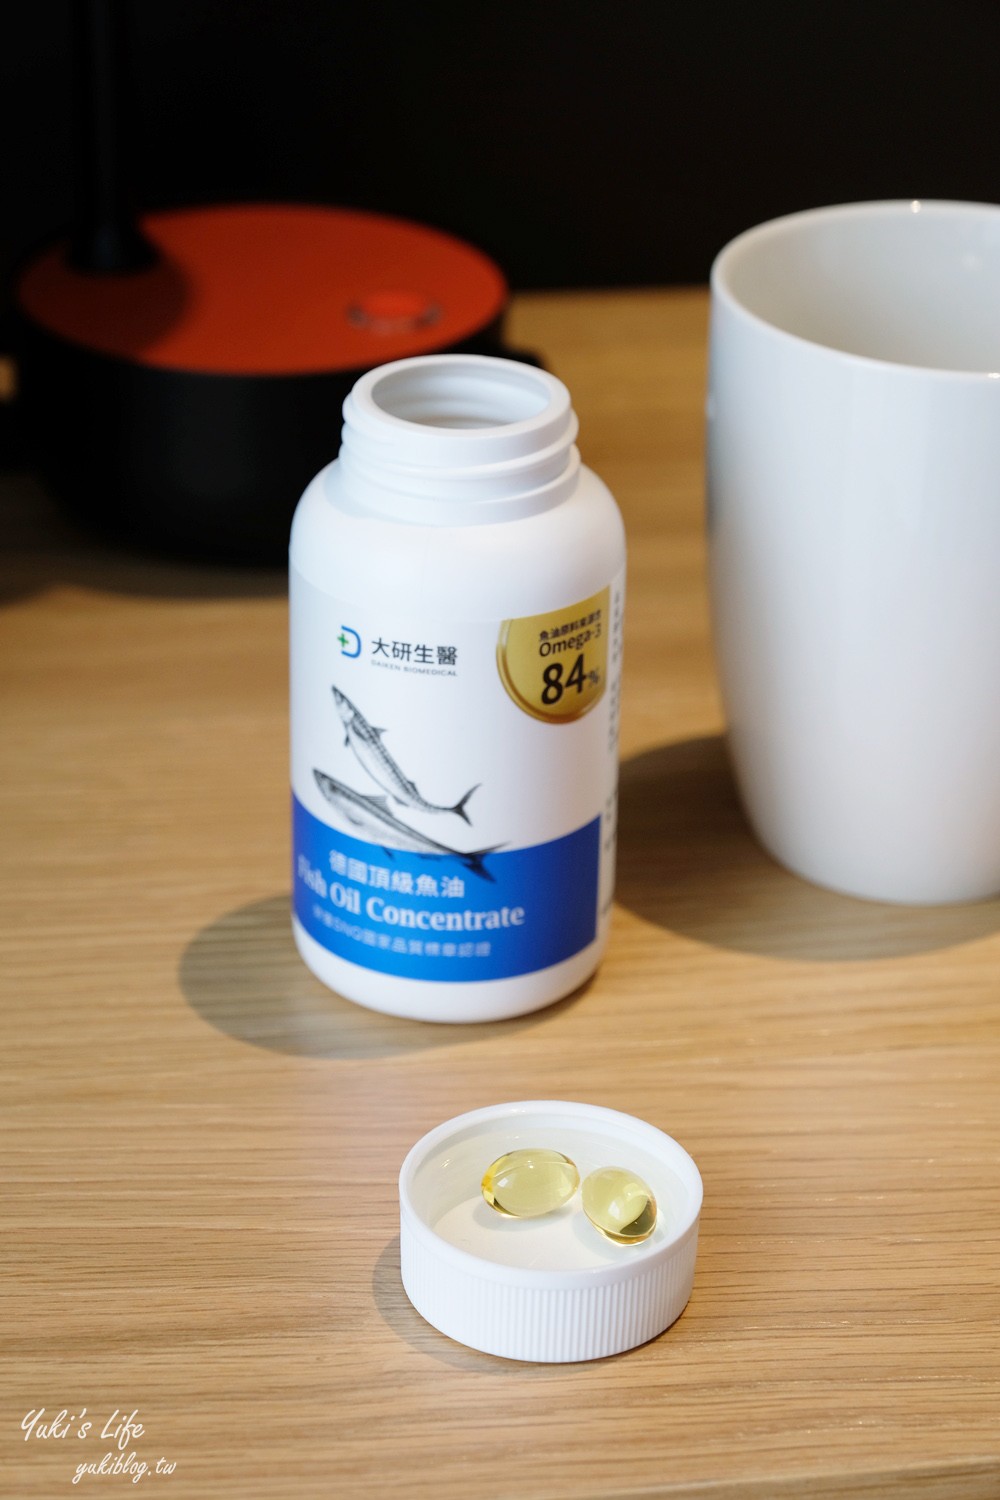 大研生醫德國頂級魚油┃SGS檢驗Omega3達95.8%含量~迷你膠囊優質魚油的好選擇！ - yukiblog.tw